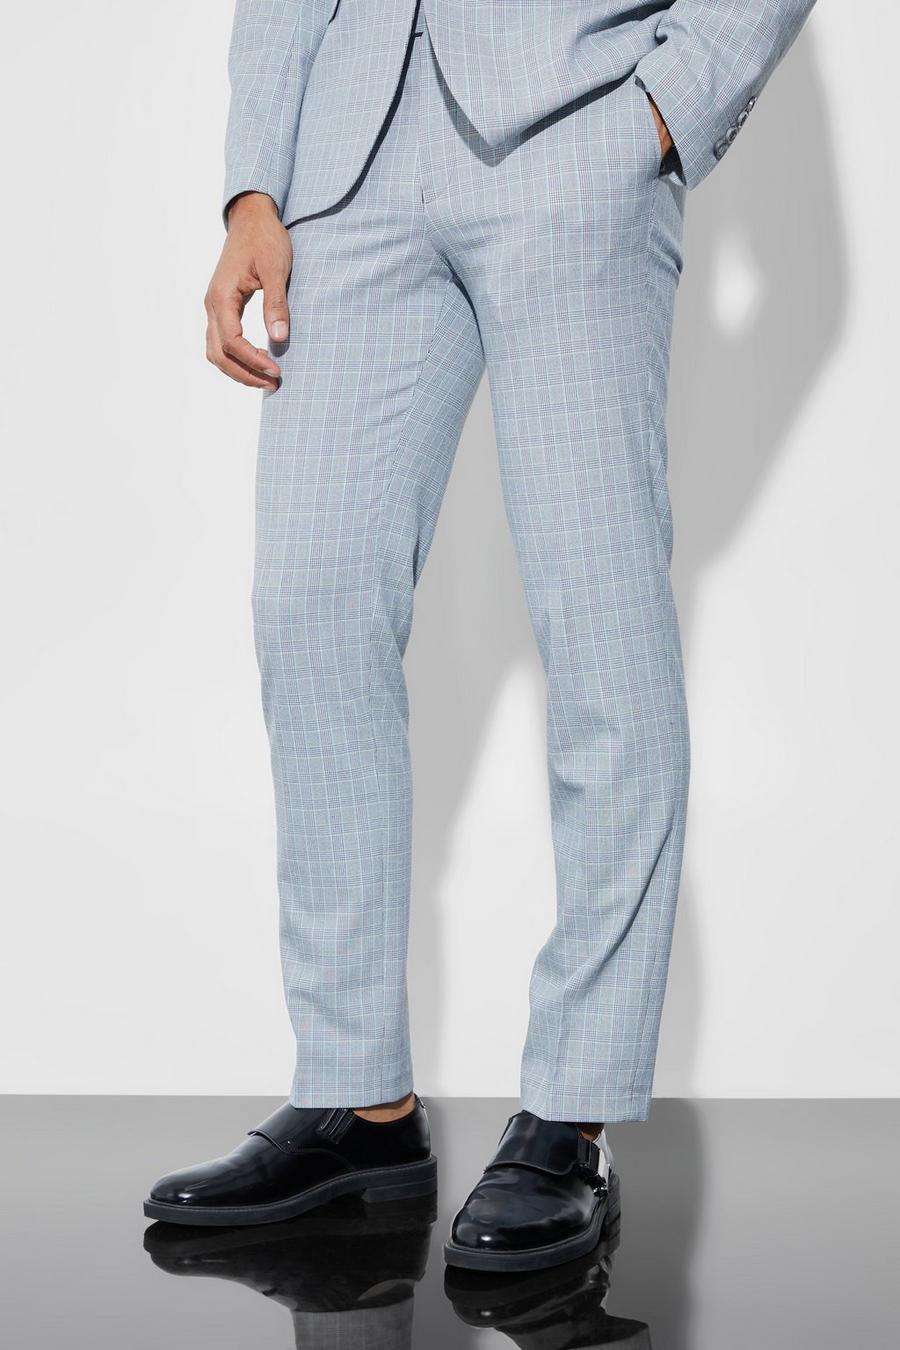 אפור בהיר grigio  מכנסי חליפה עם הדפס משבצות בגזרה צרה